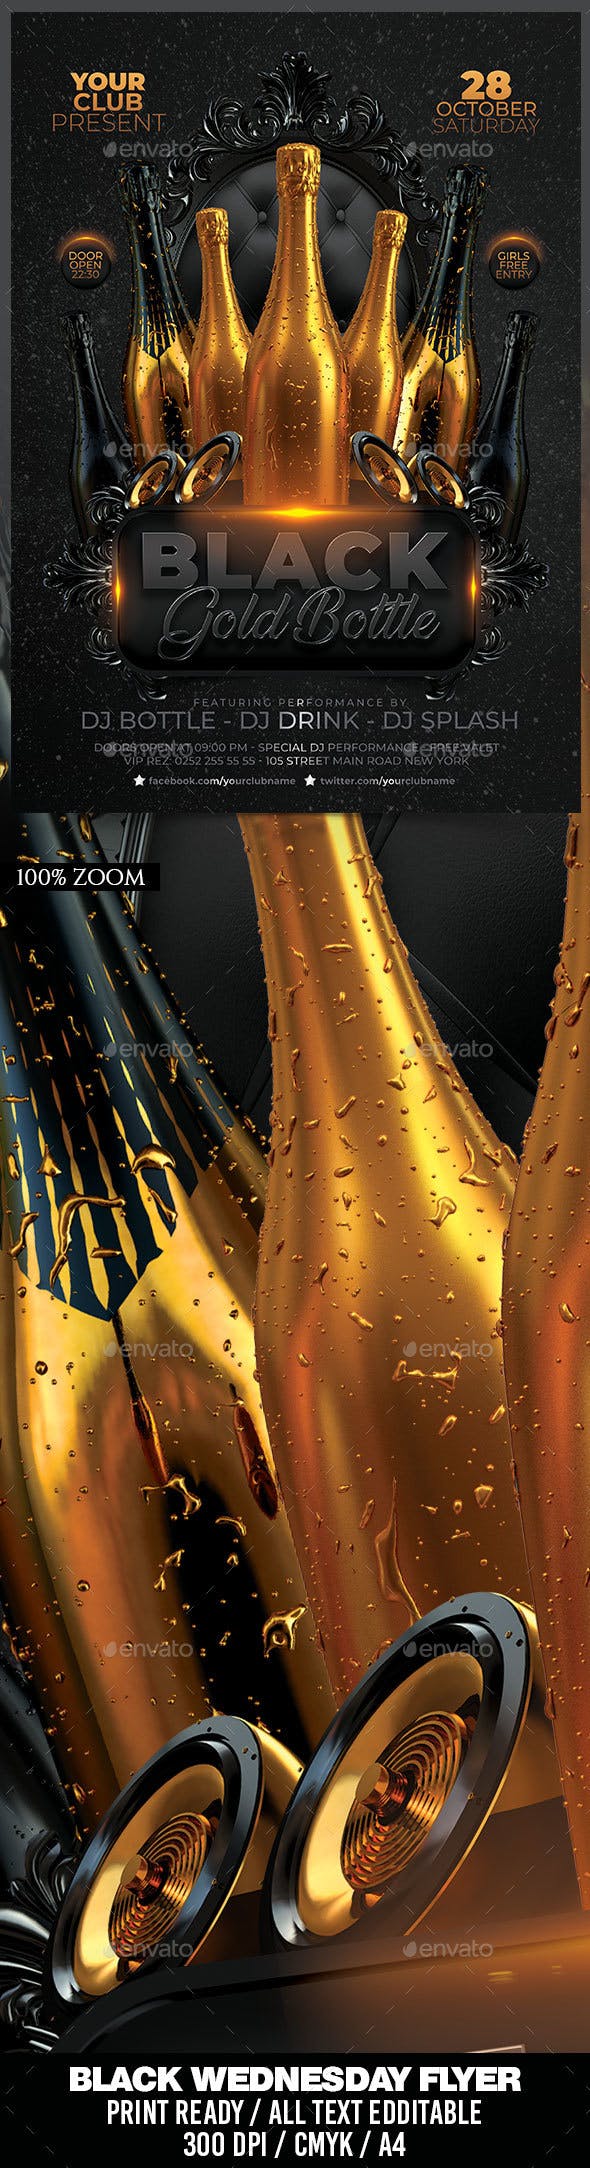 时尚高端黑金瓶派对海报模板 Black Gold Bottle Party [psd]插图